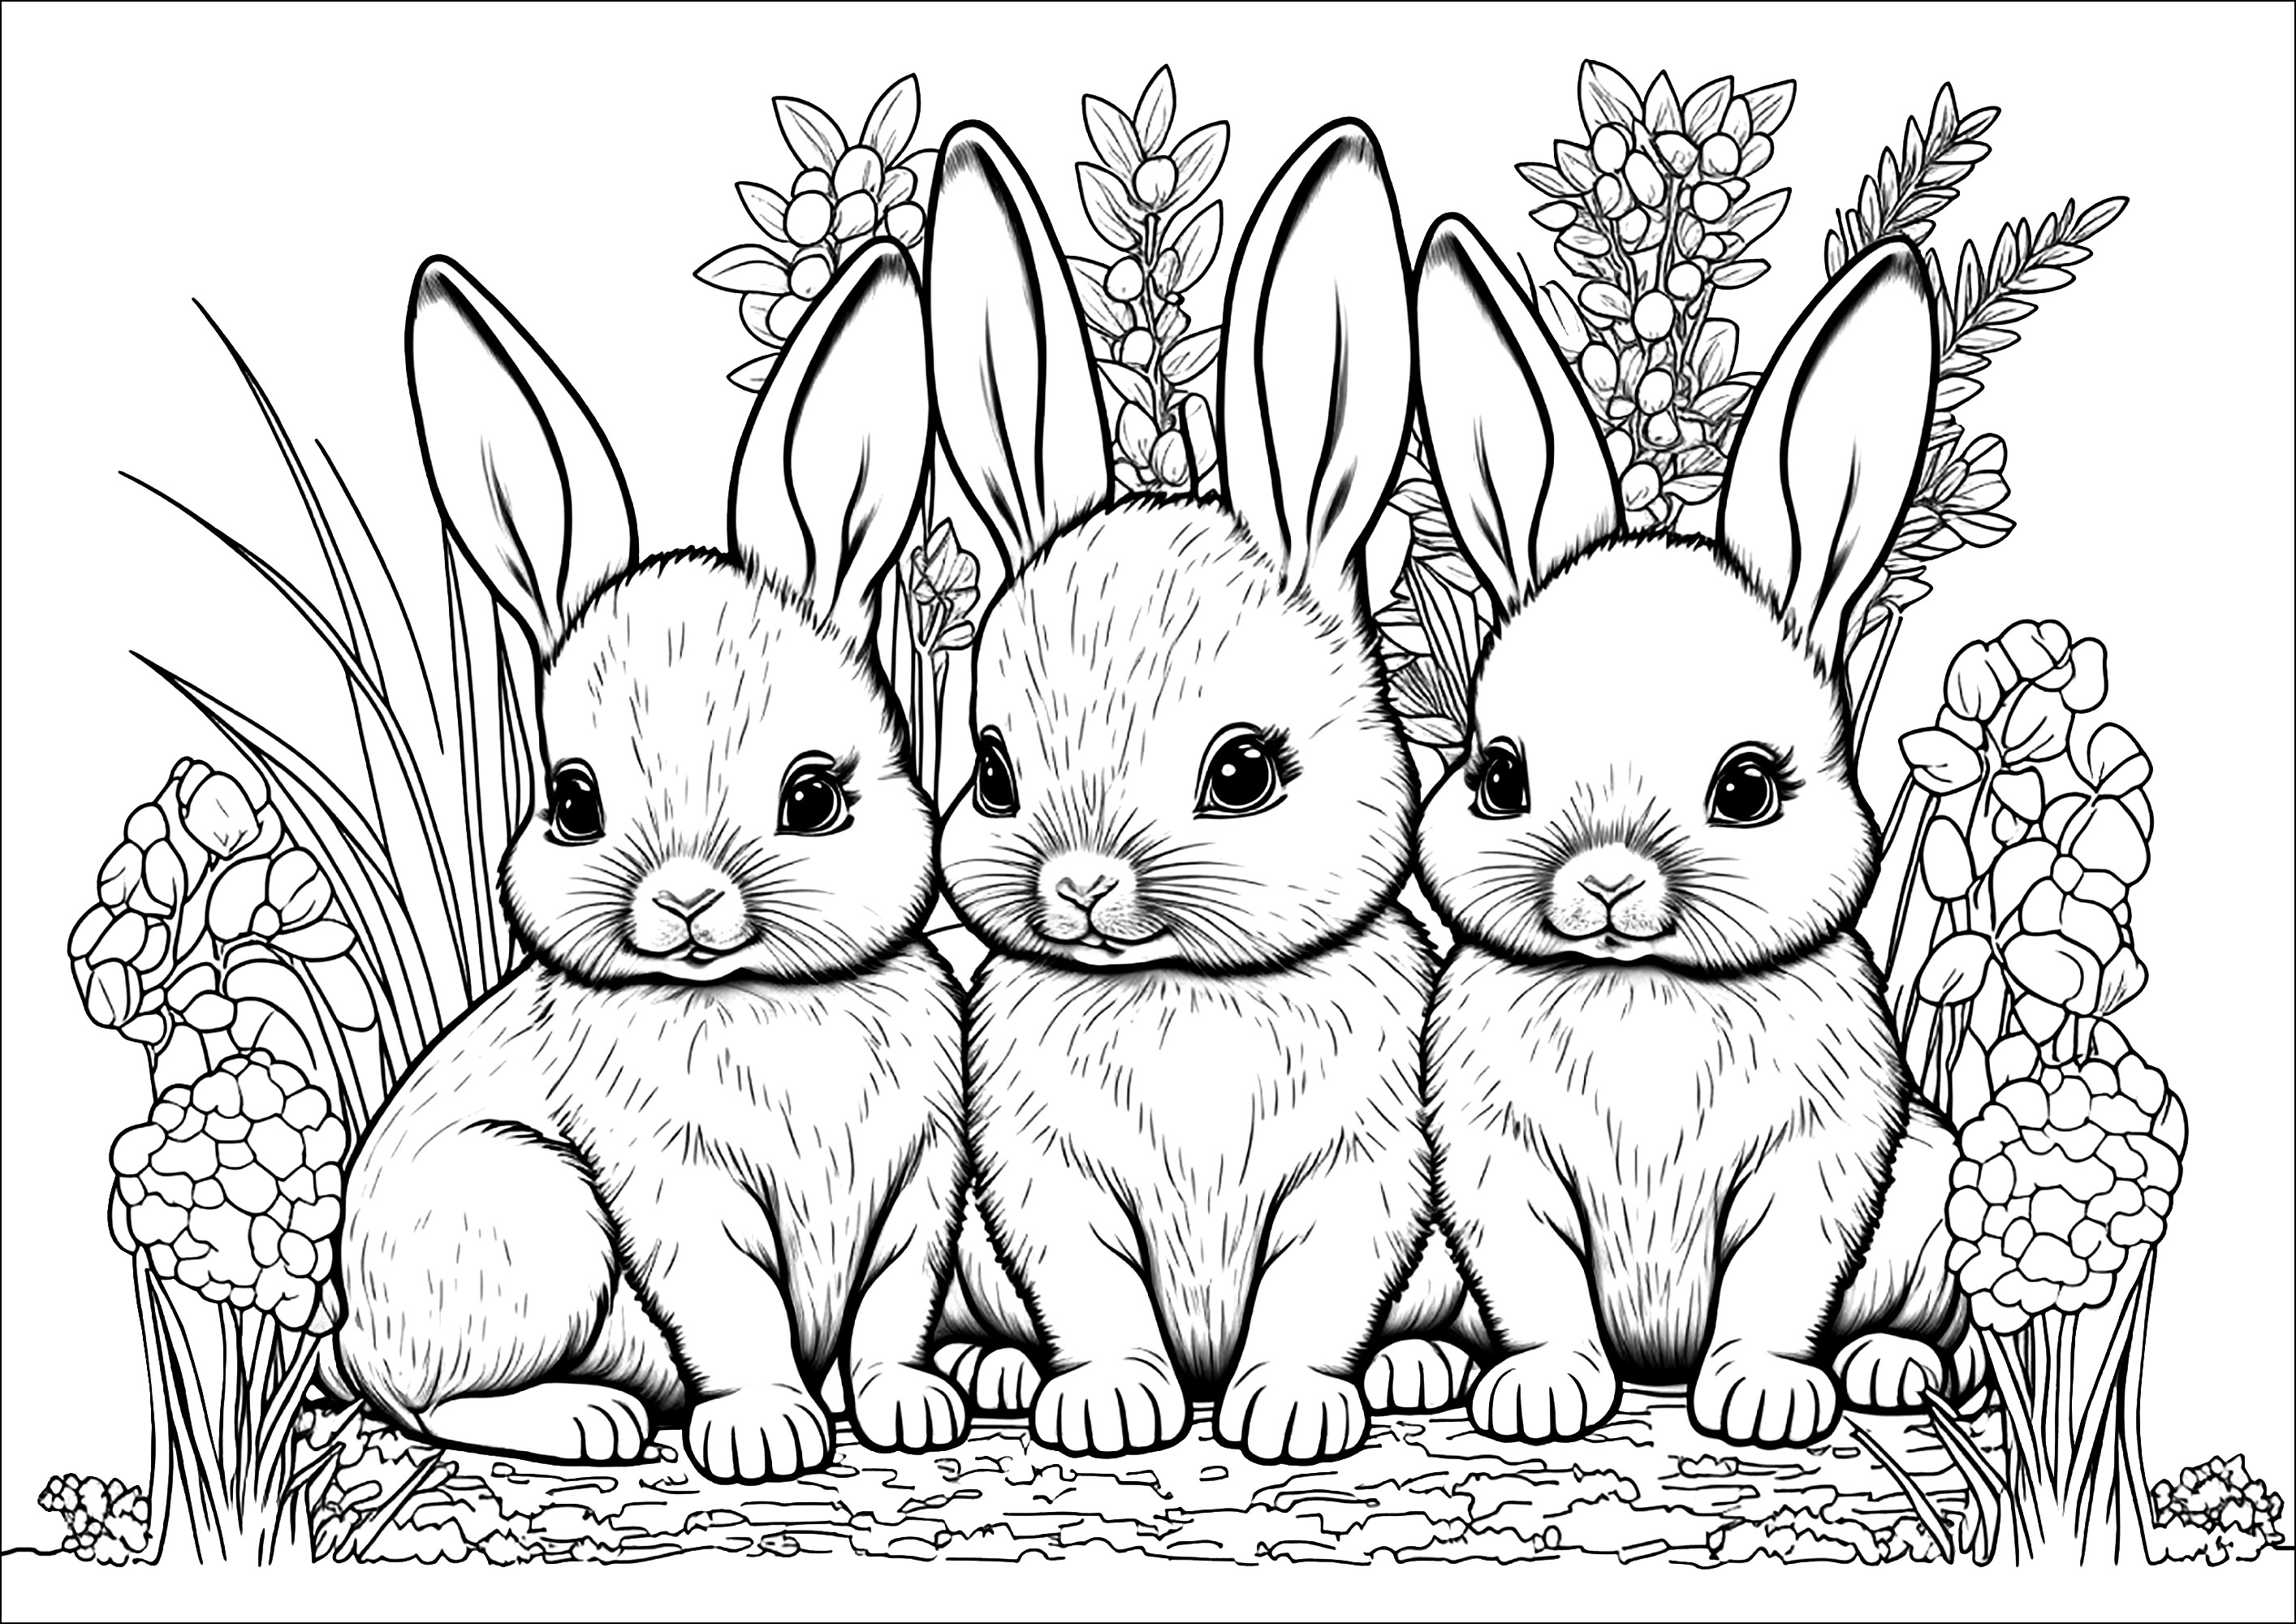 Jolis lapins à colorier, assis sagement devant un parterre de fleurs. Les lapins sont très réalistes, et les fleurs sont très détaillées et variées.